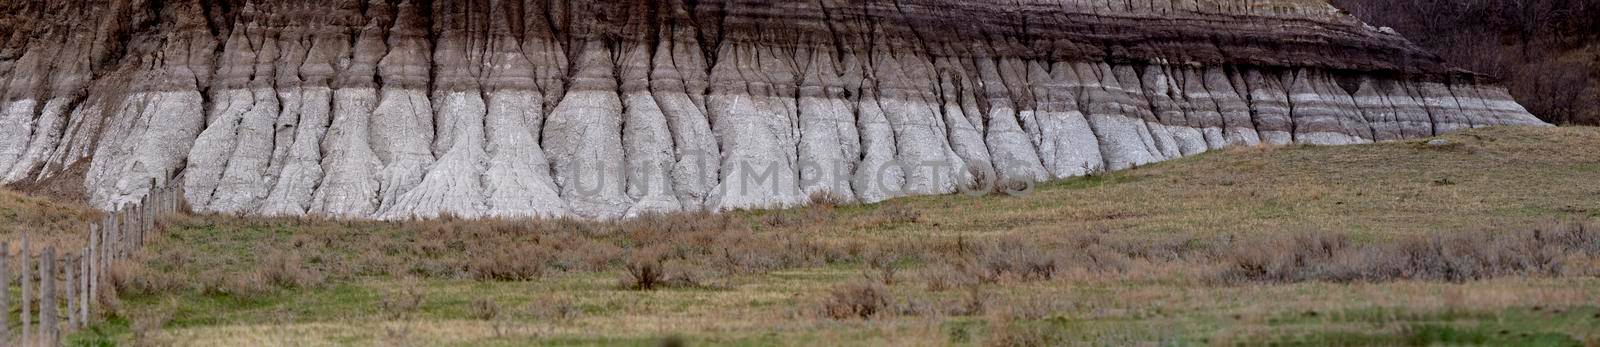 Saskatchewan Canada Badlands Big Muddy Formations Scenic